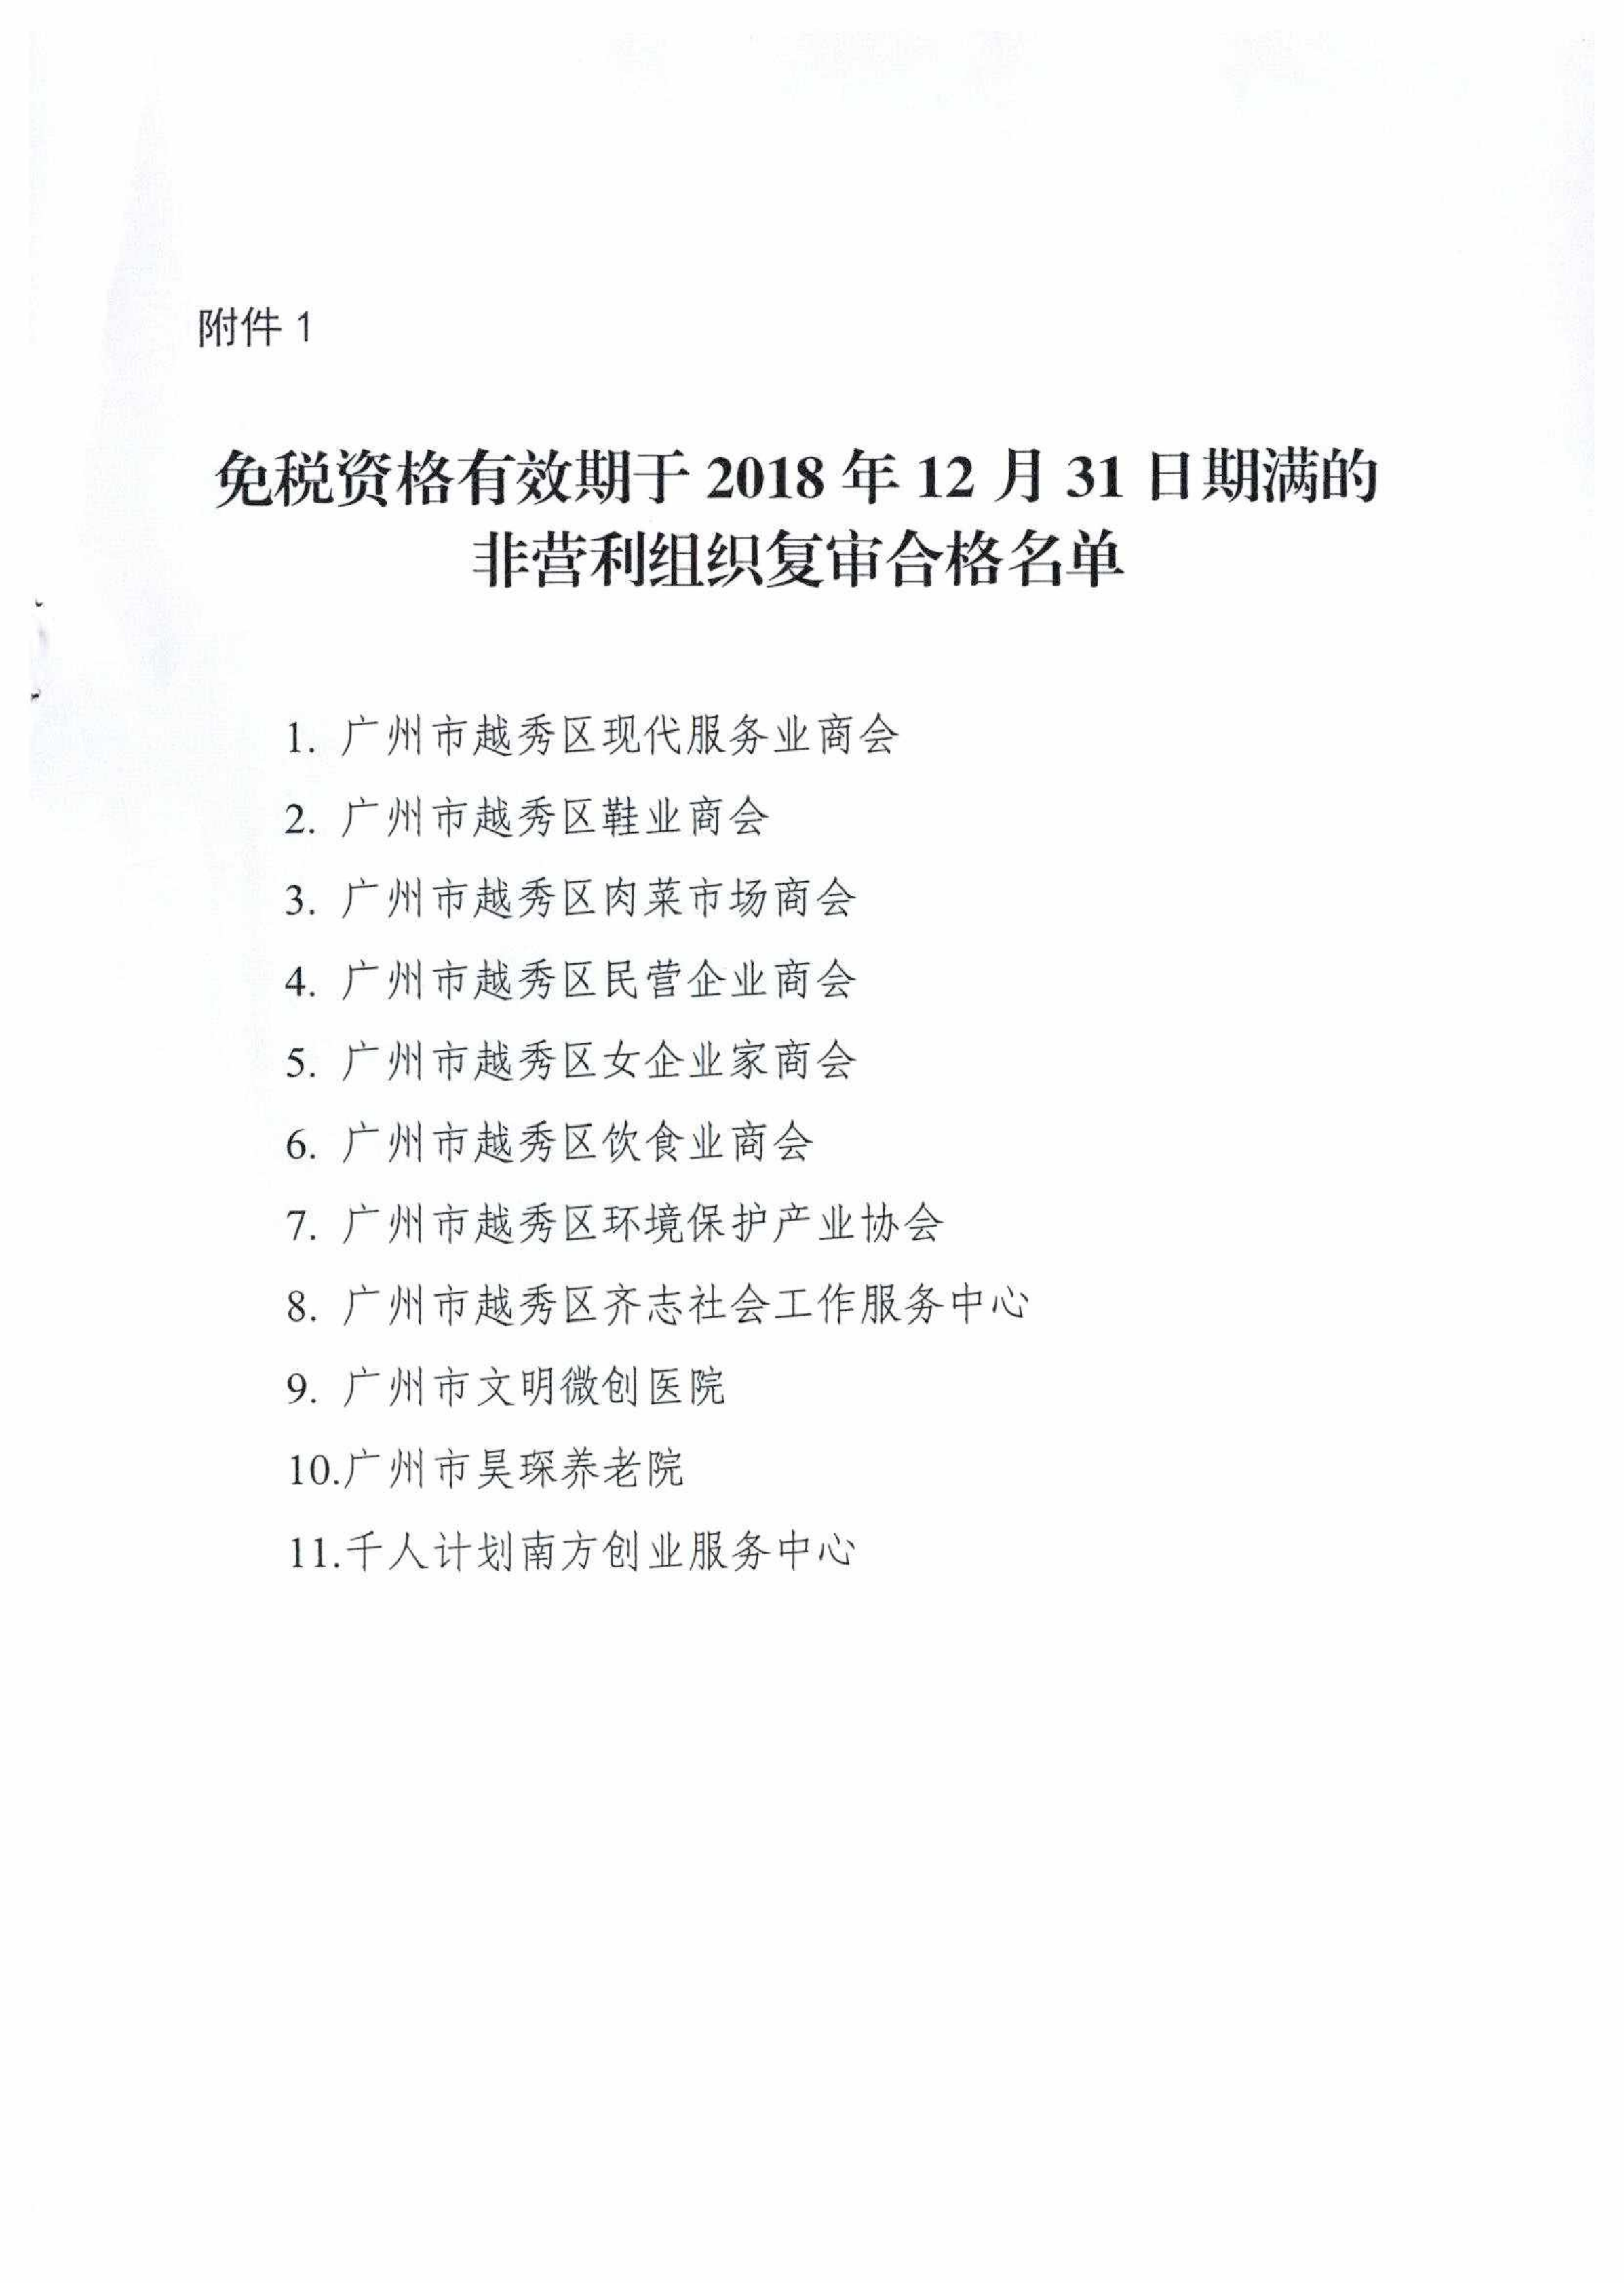 2018年免税资格复审通知及名单_03.png